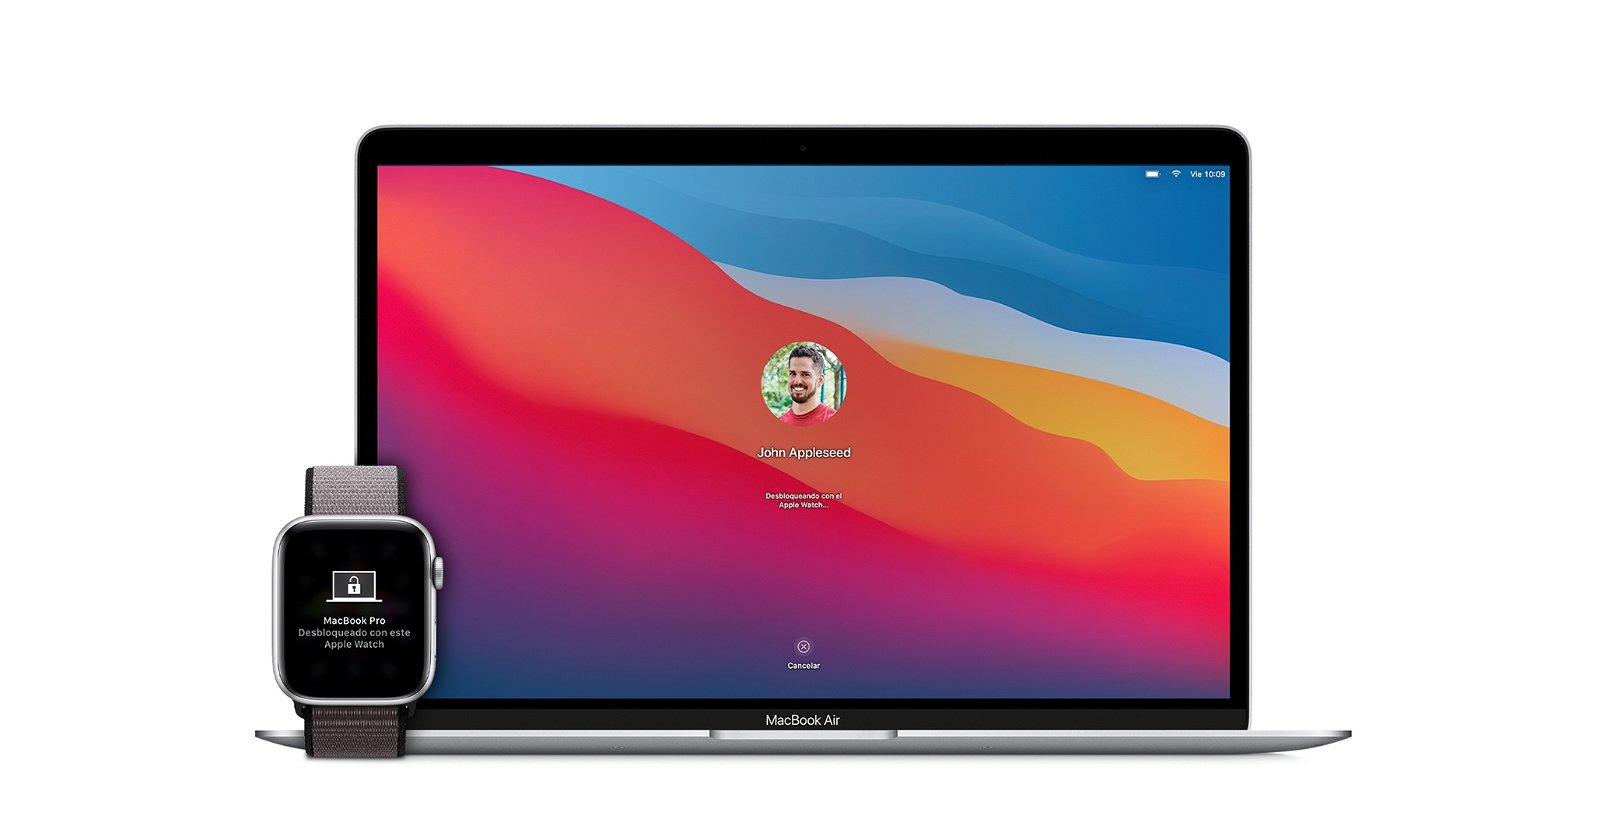 Desbloquear el Mac con el Apple Watch